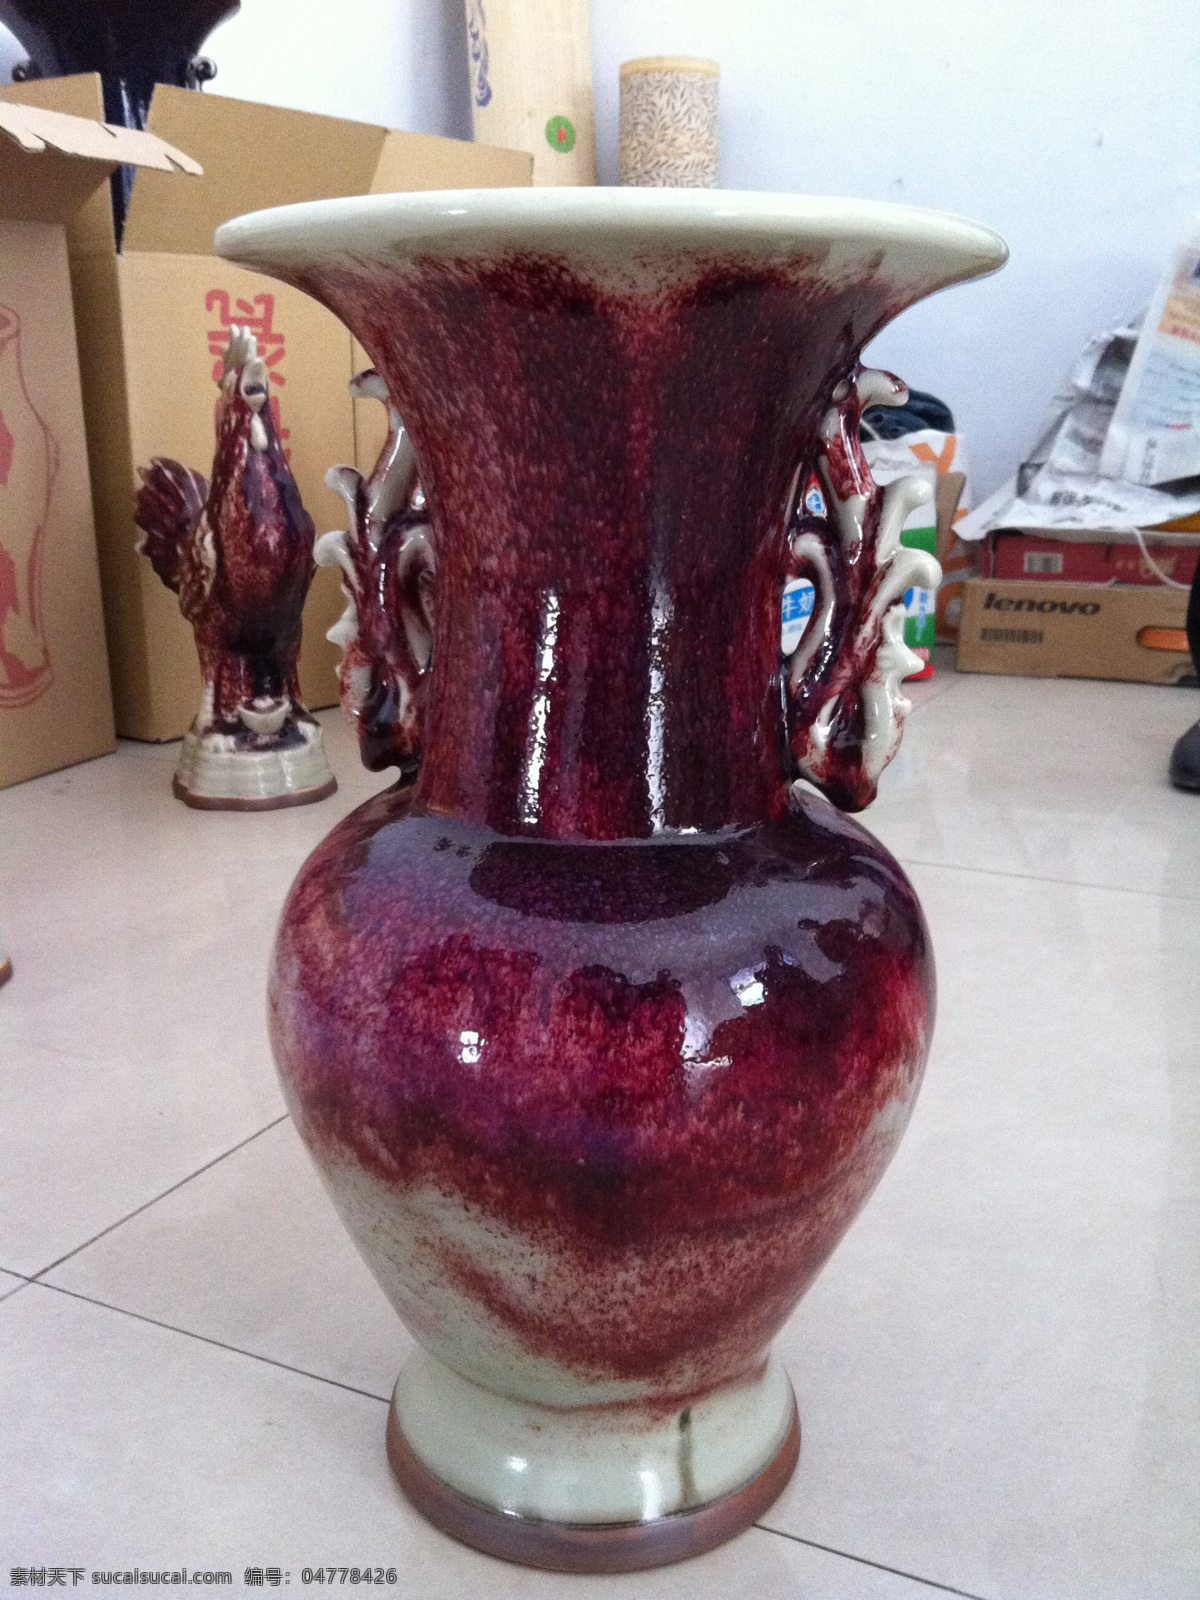 钧瓷花瓶 钧瓷 瓷器 陶瓷 瓷瓶 瓷器宣传画 瓷器图片 文化艺术 器物 传统文化